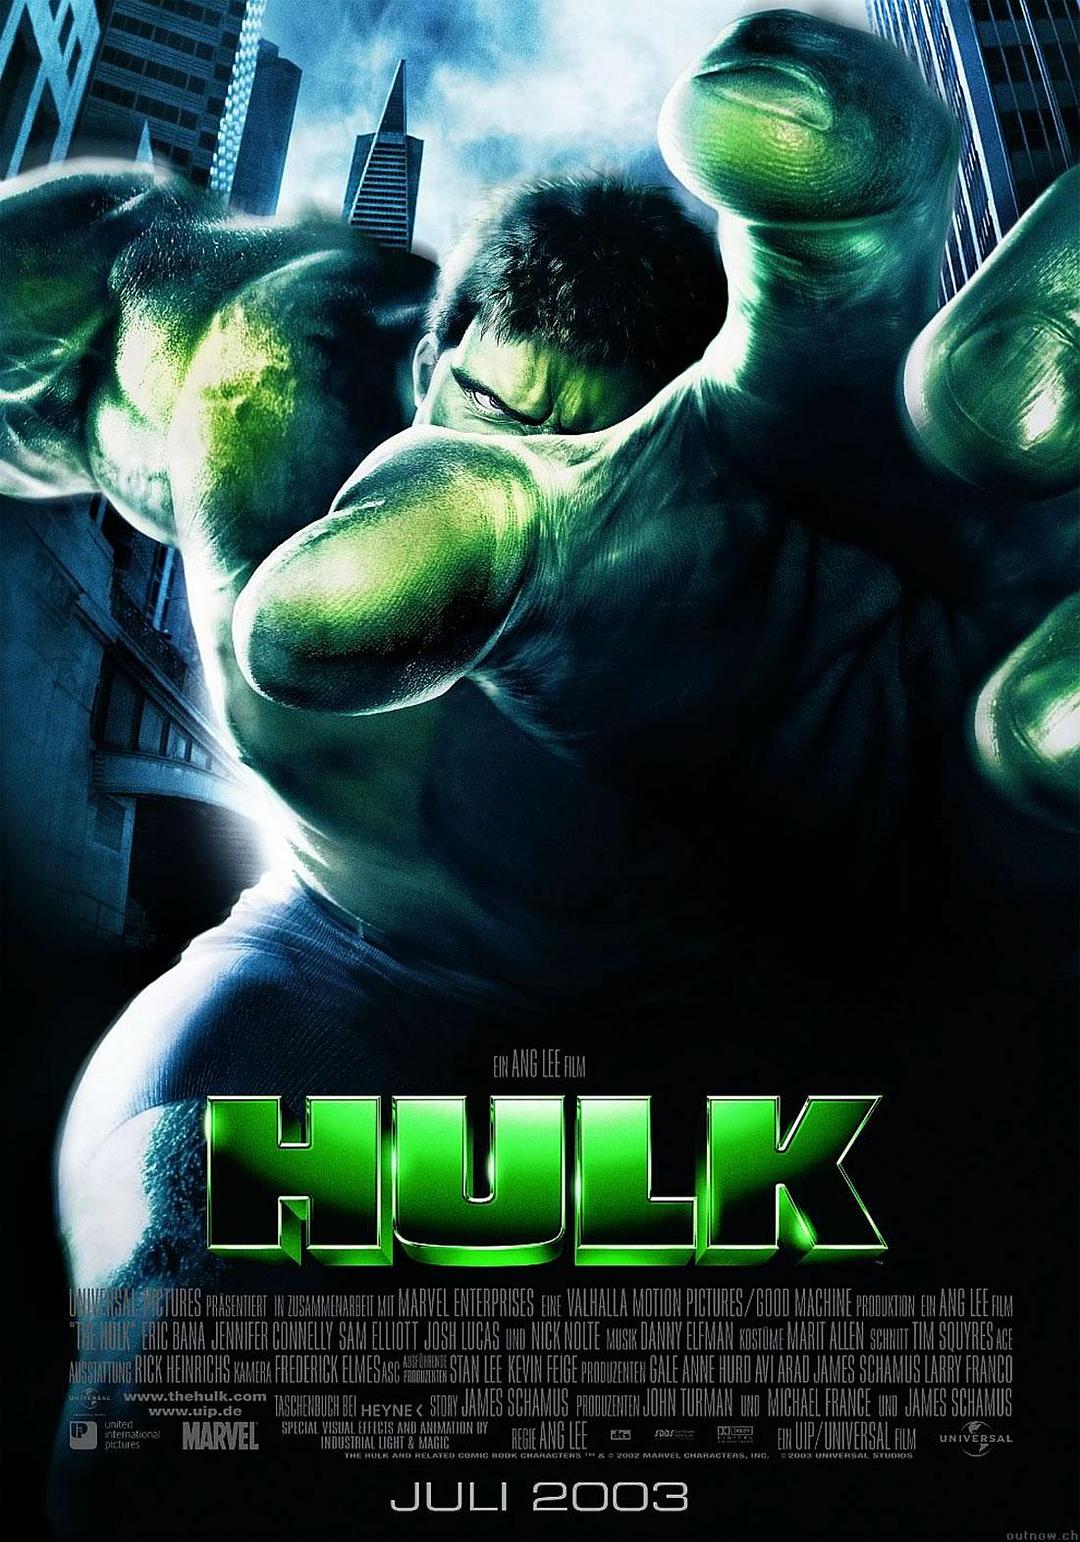 绿伟人浩克 Hulk.2003.2160p.BluRay.REMUX.HEVC.DTS-X.7.1-FGT 76.28GB-1.png